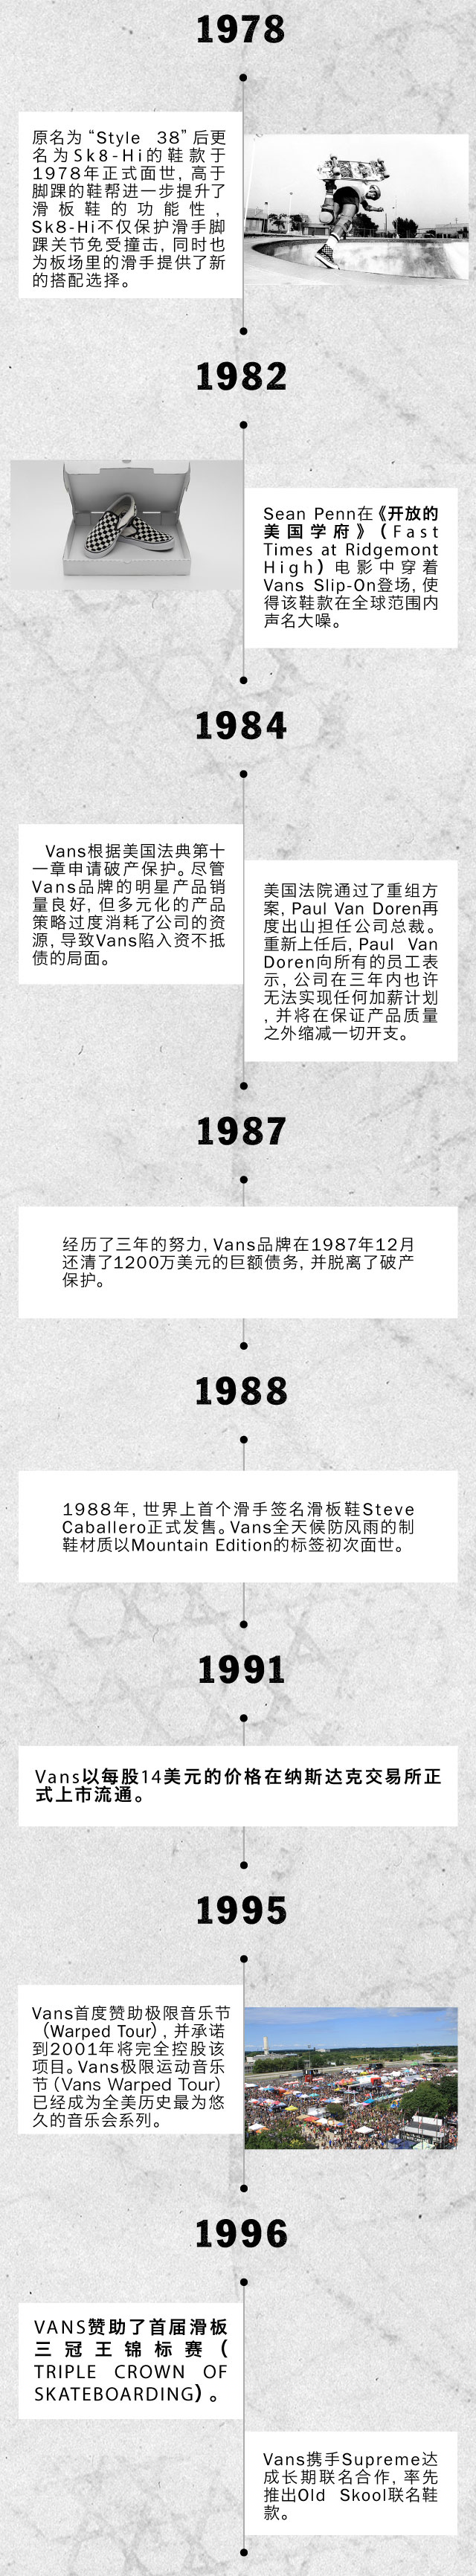 Vans-Brand-History_Mobile_02